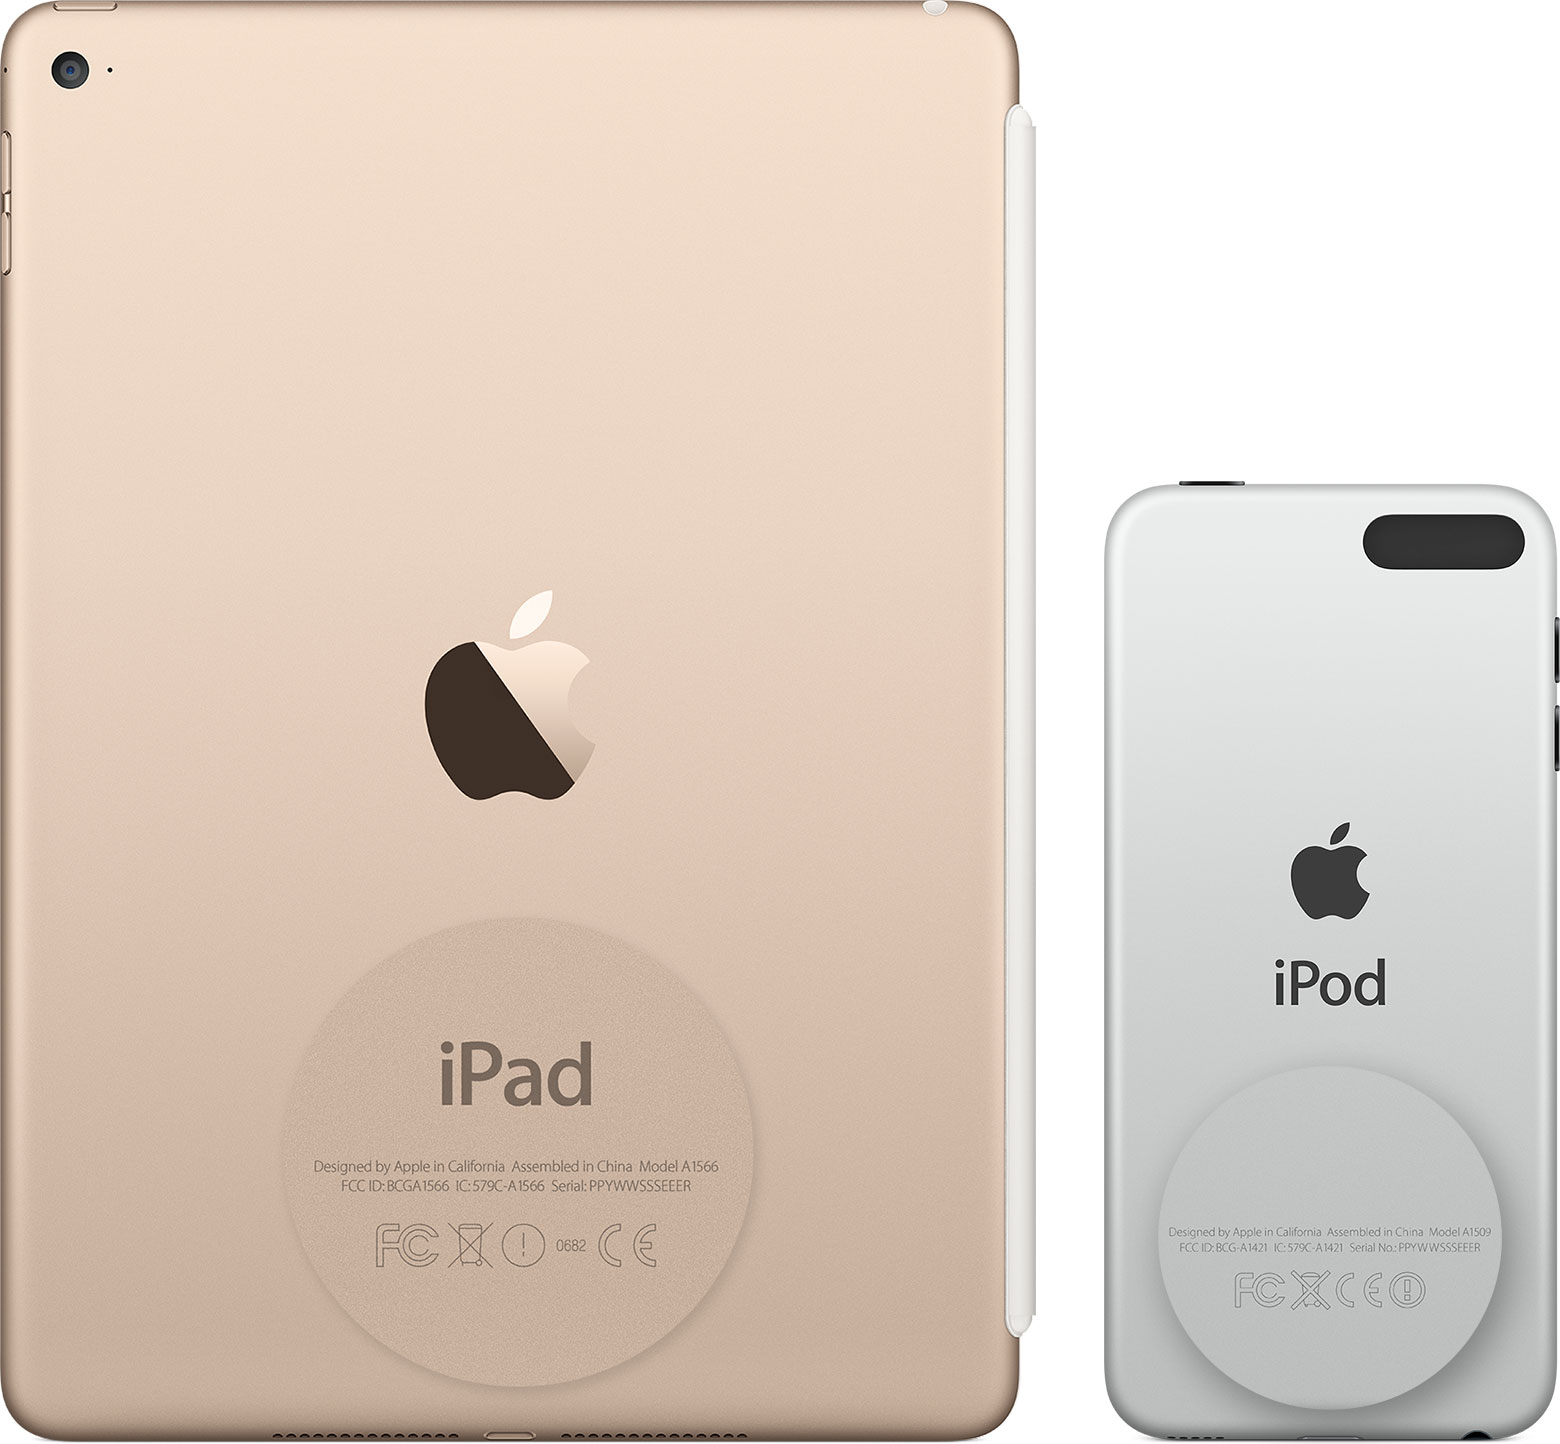  Серийный номер устройств iPad Pro, iPad и iPod touch находится на задней панели.